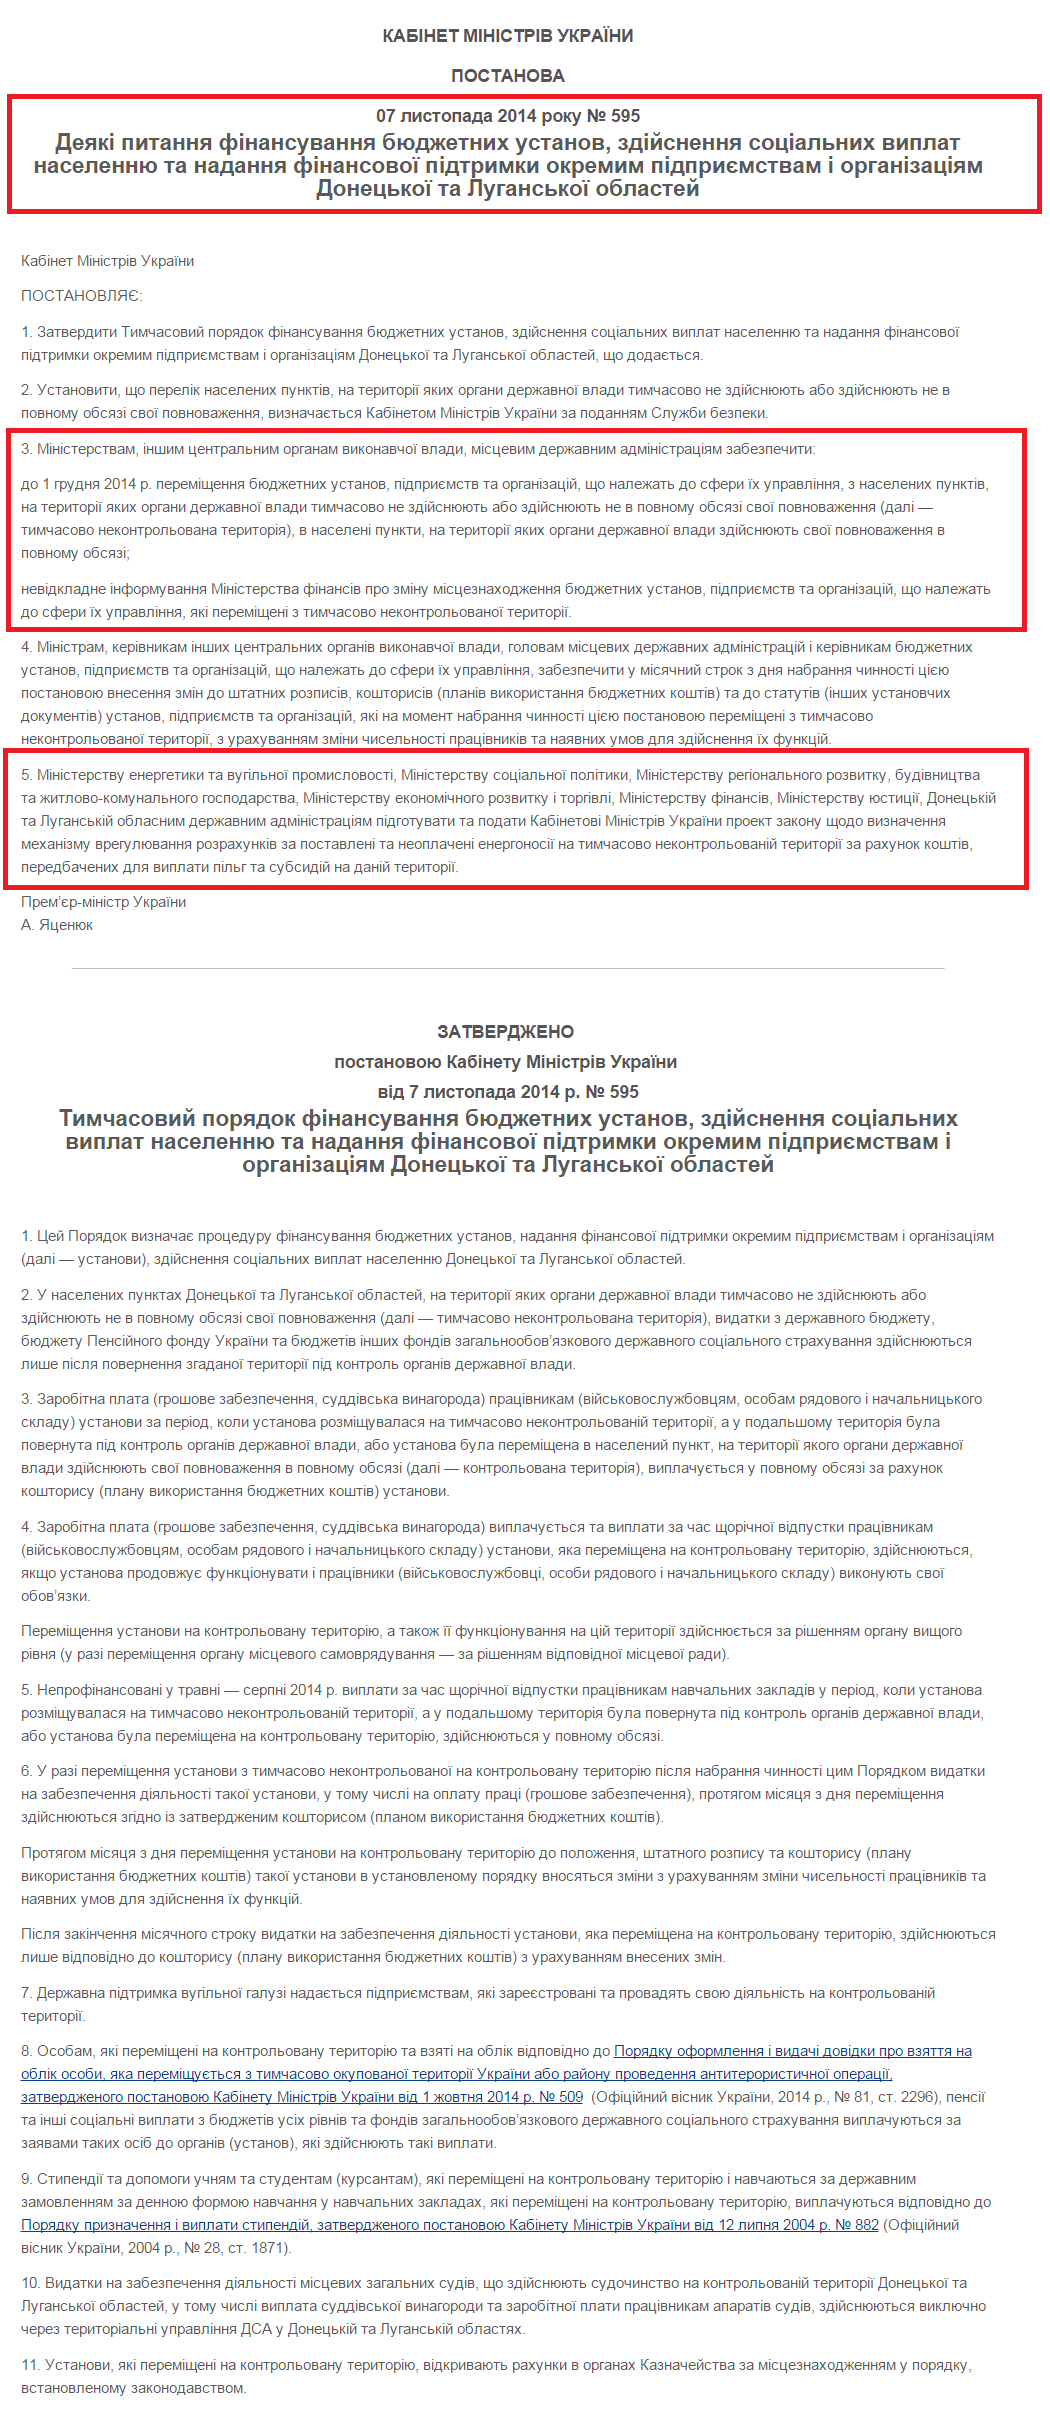 http://www.kadrovik01.com.ua/regulations/2339/418329/